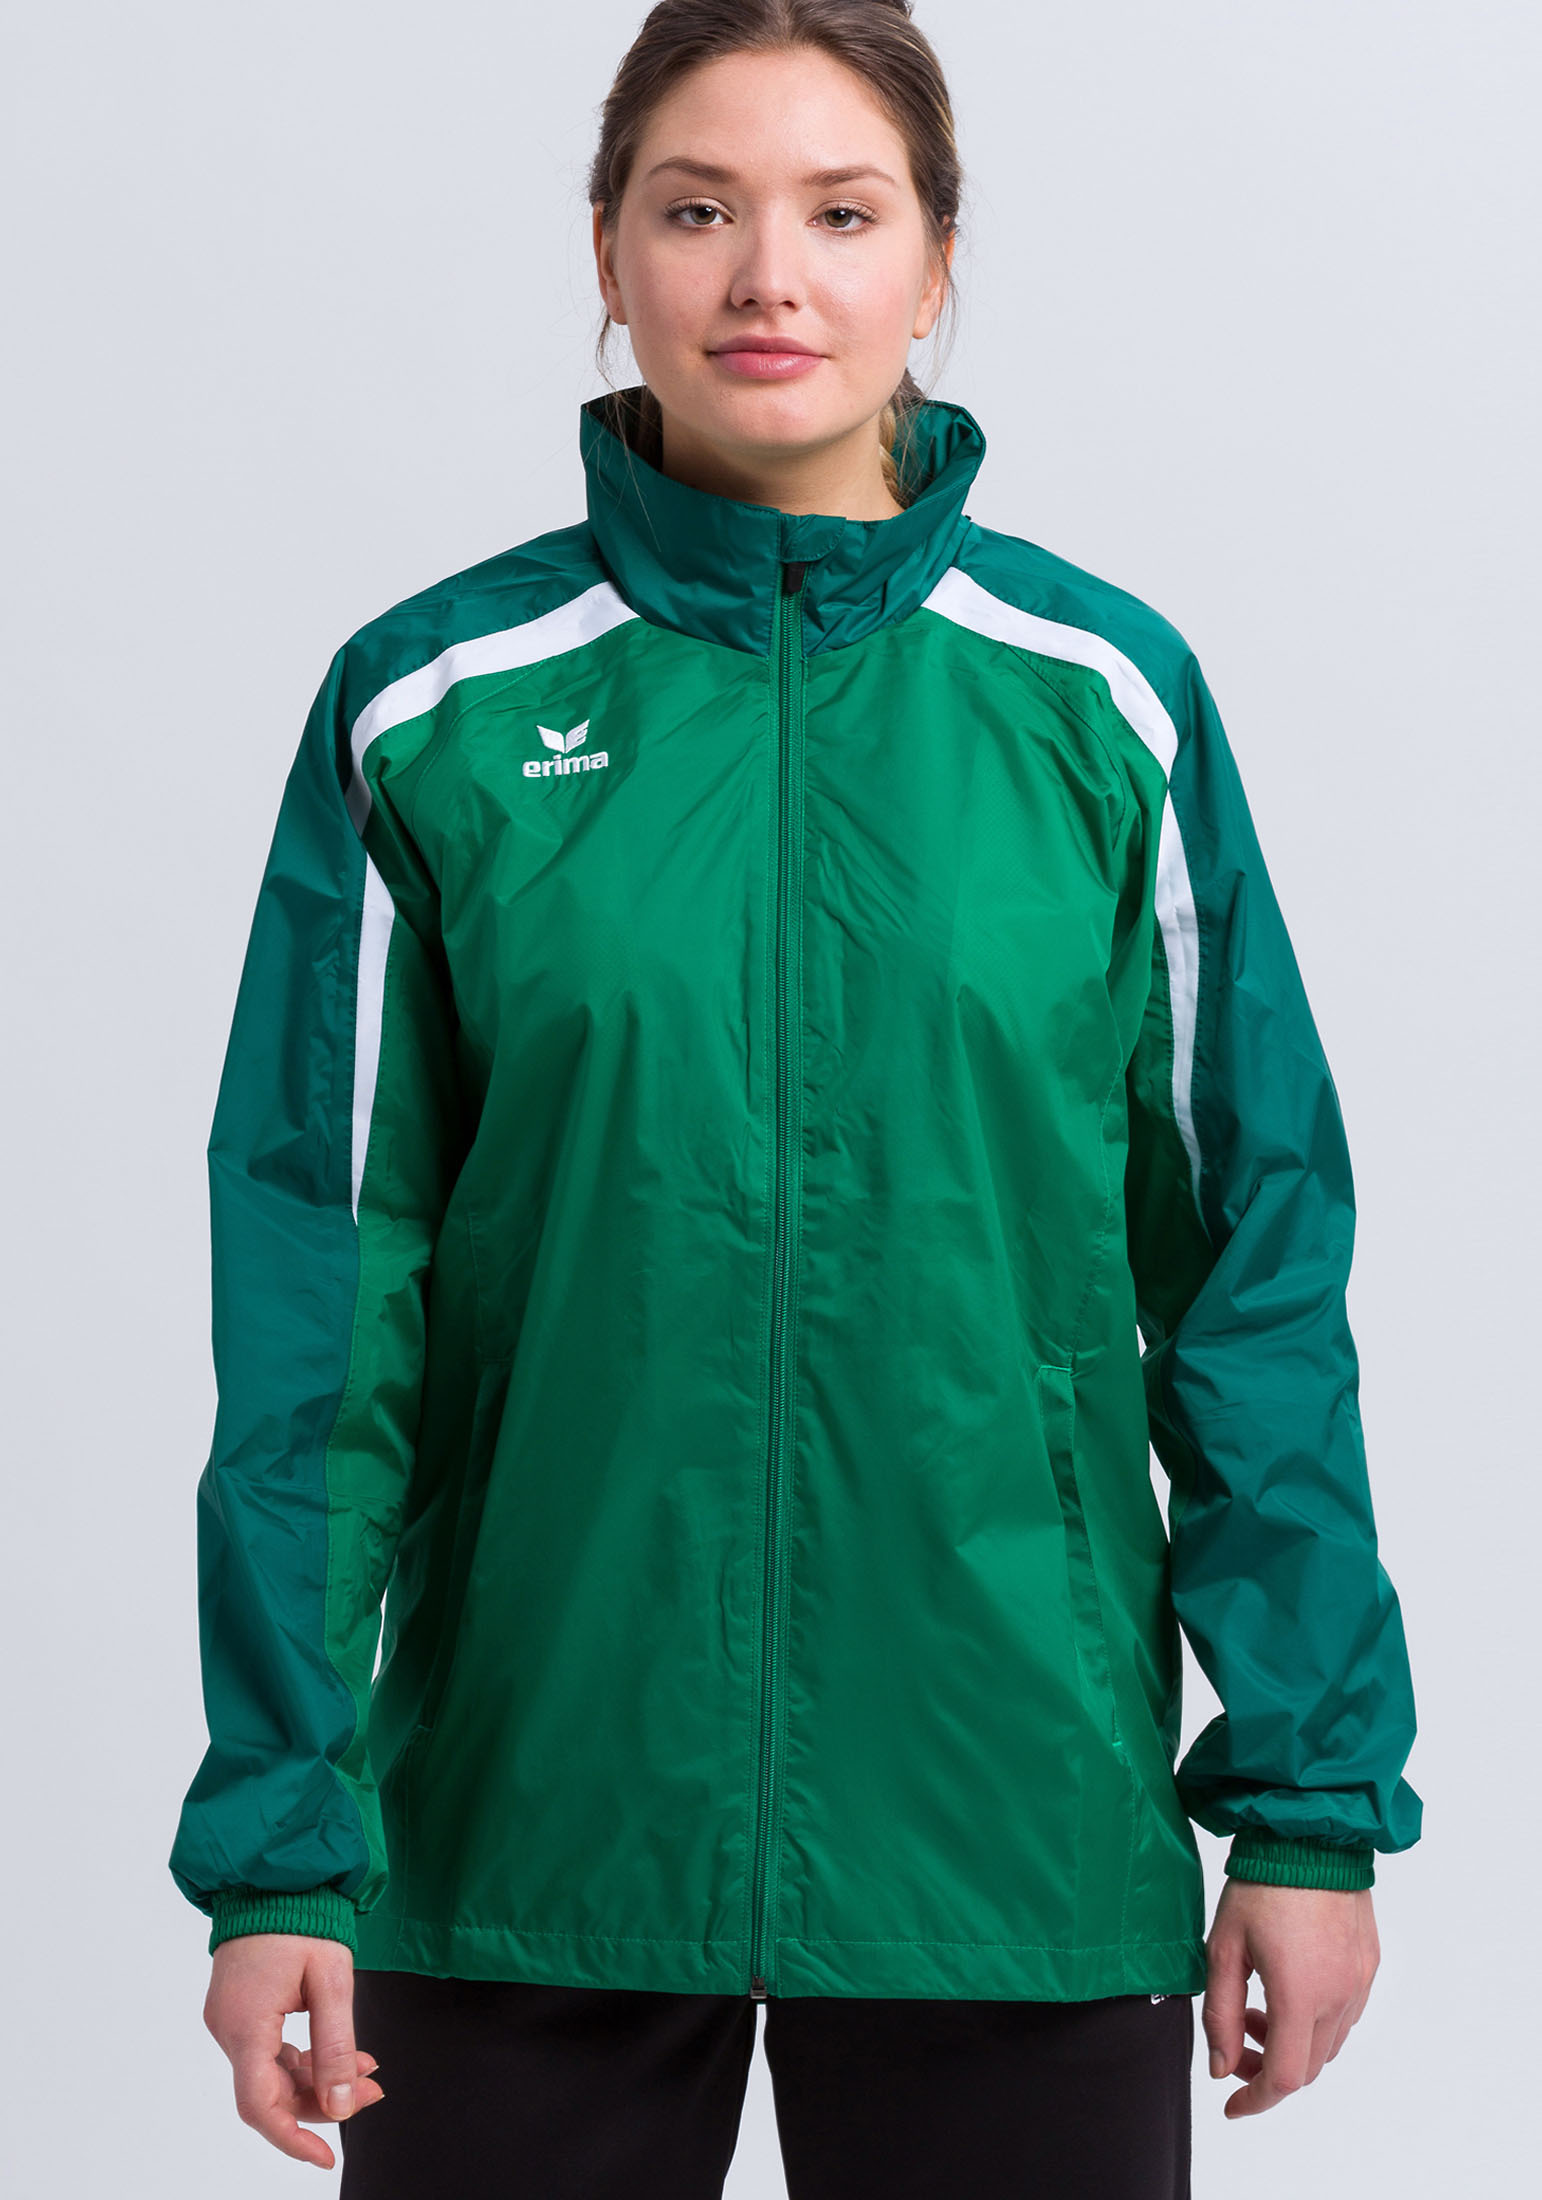 Функциональная куртка erima Liga 2.0 Allwetterjacke, цвет smaragd/vergreen/weiss